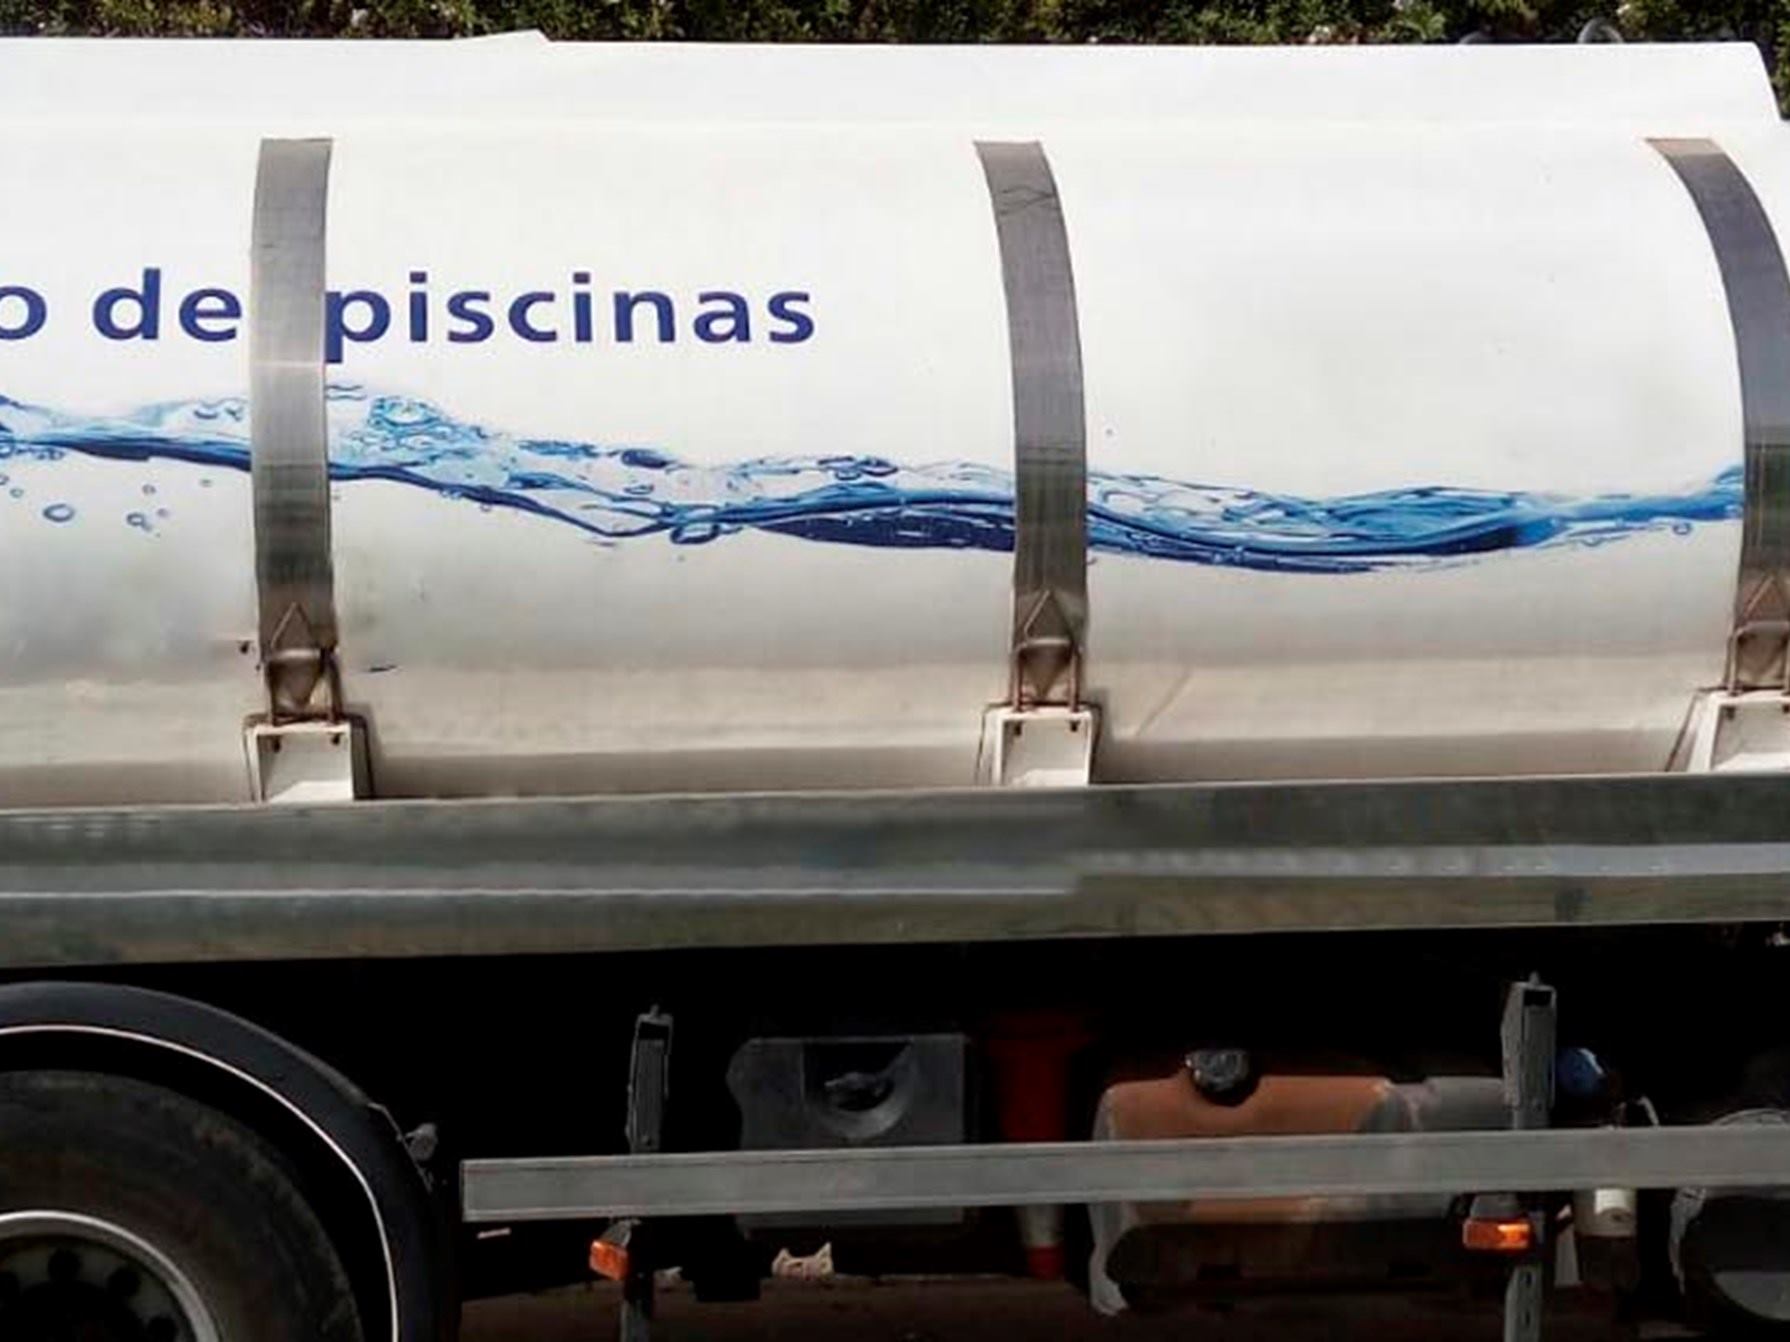 Suministro de agua potable en Mallorca